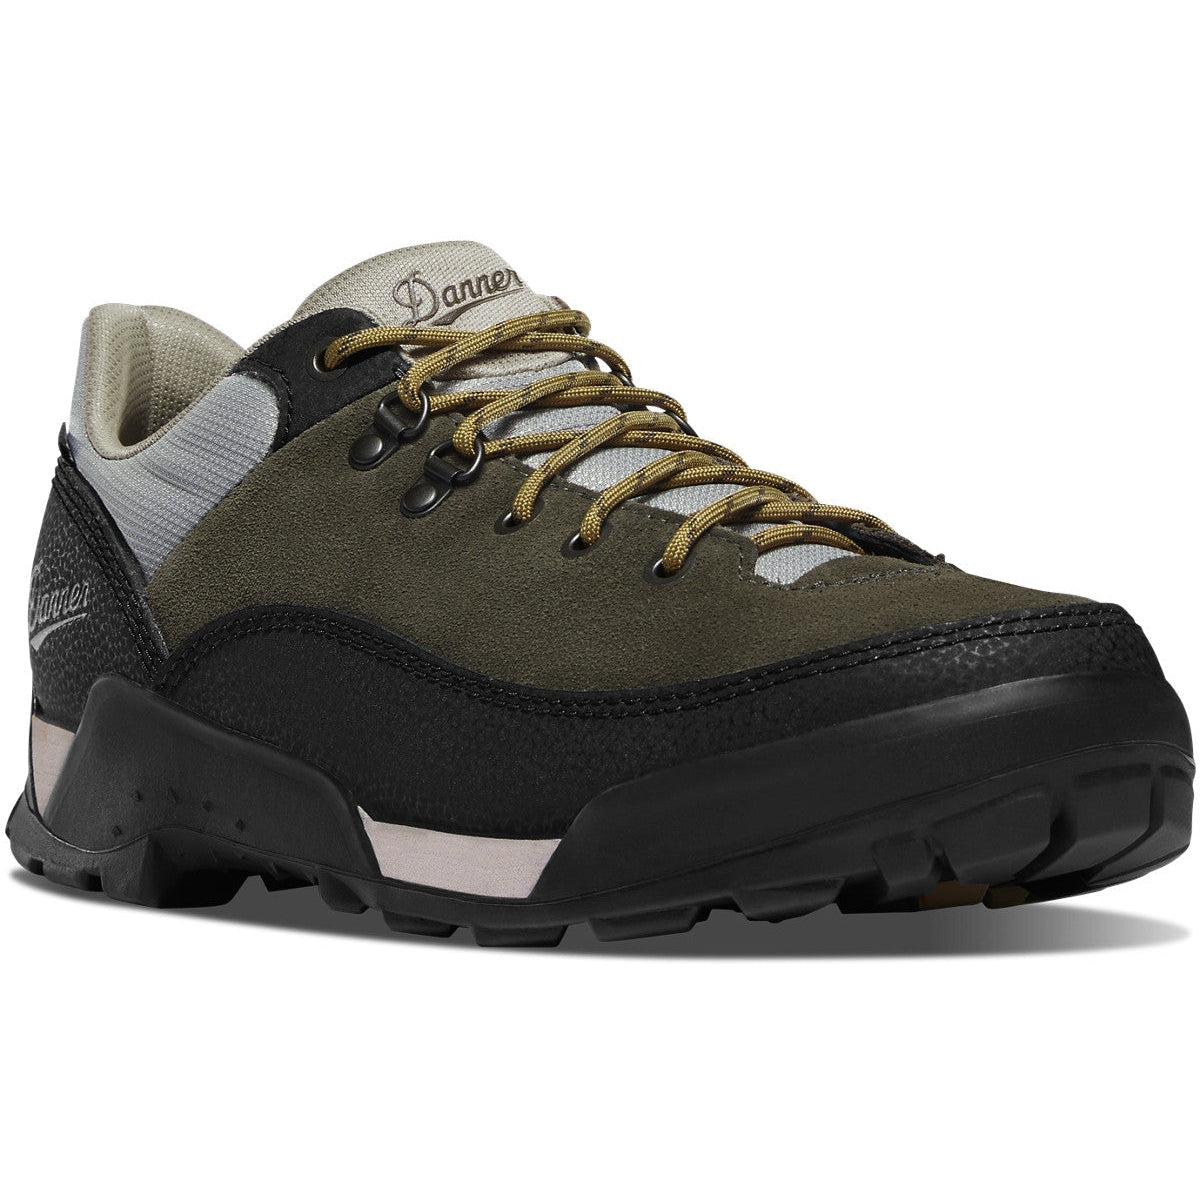 Danner Men's Panorama 4" Waterproof Hiking Shoe - Black Olive - 63471  - Overlook Boots